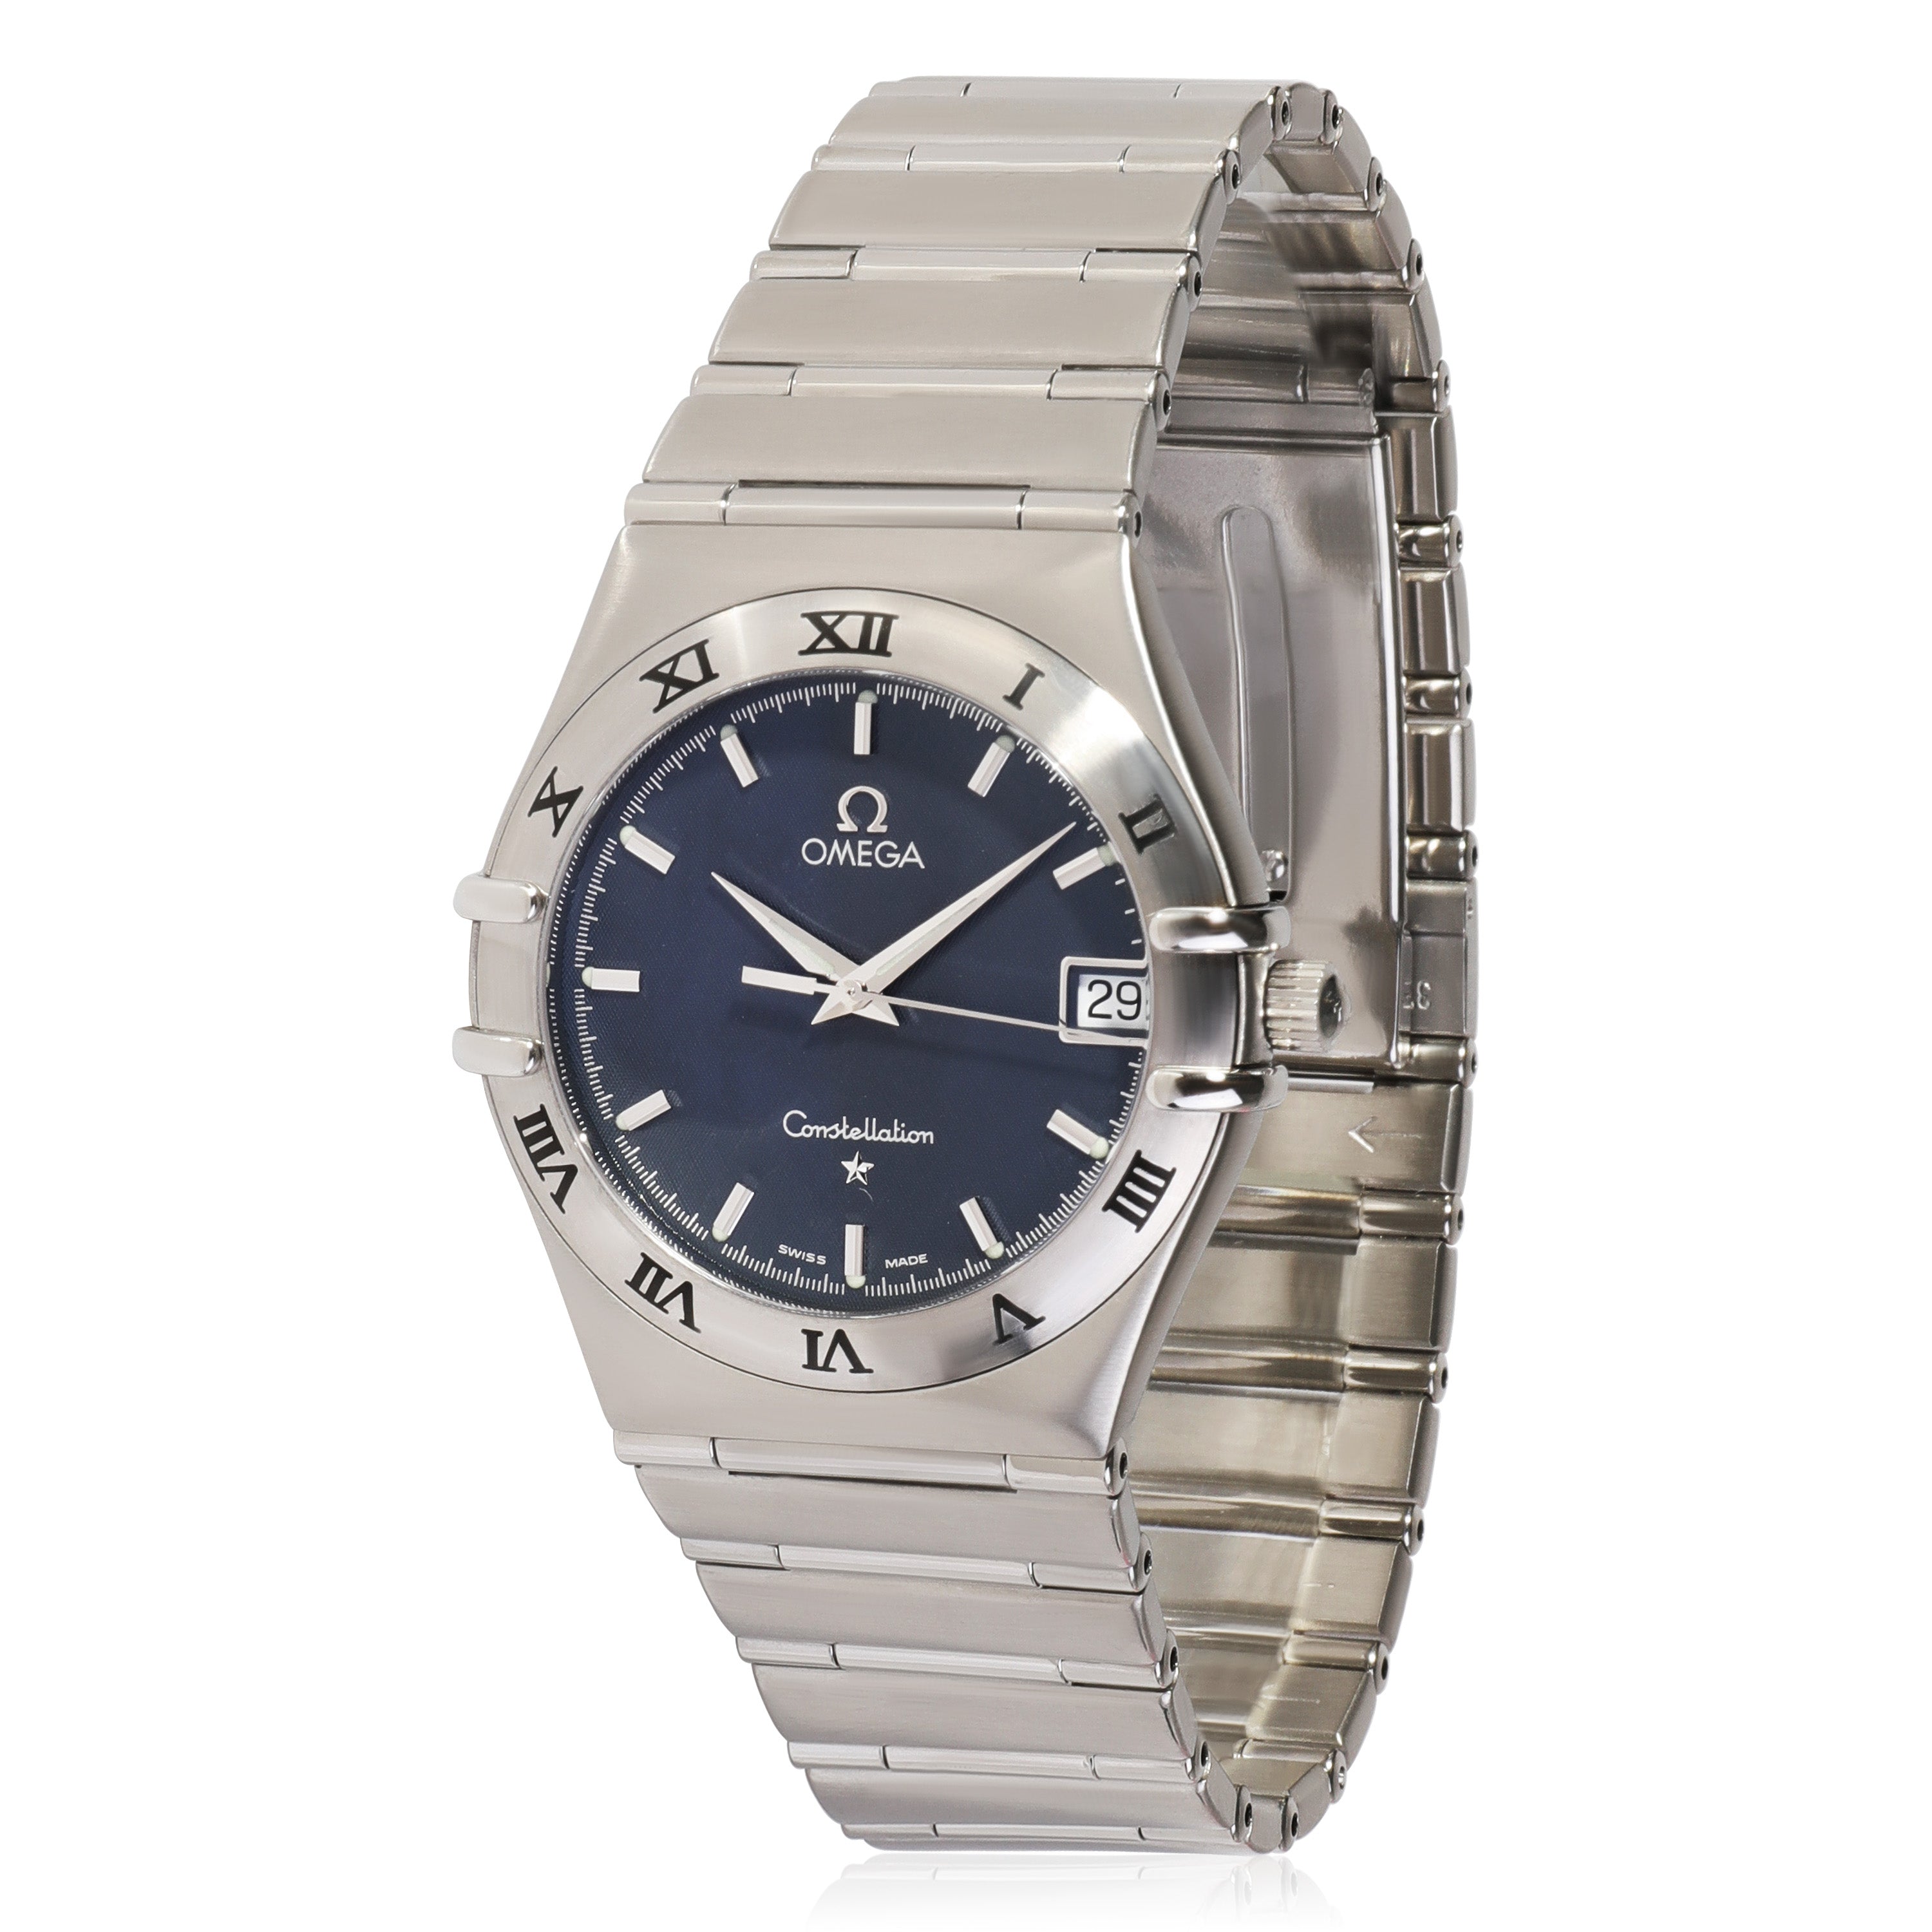 Louis Vuitton Monogram Macassar 8 Watch Case, myGemma, QA